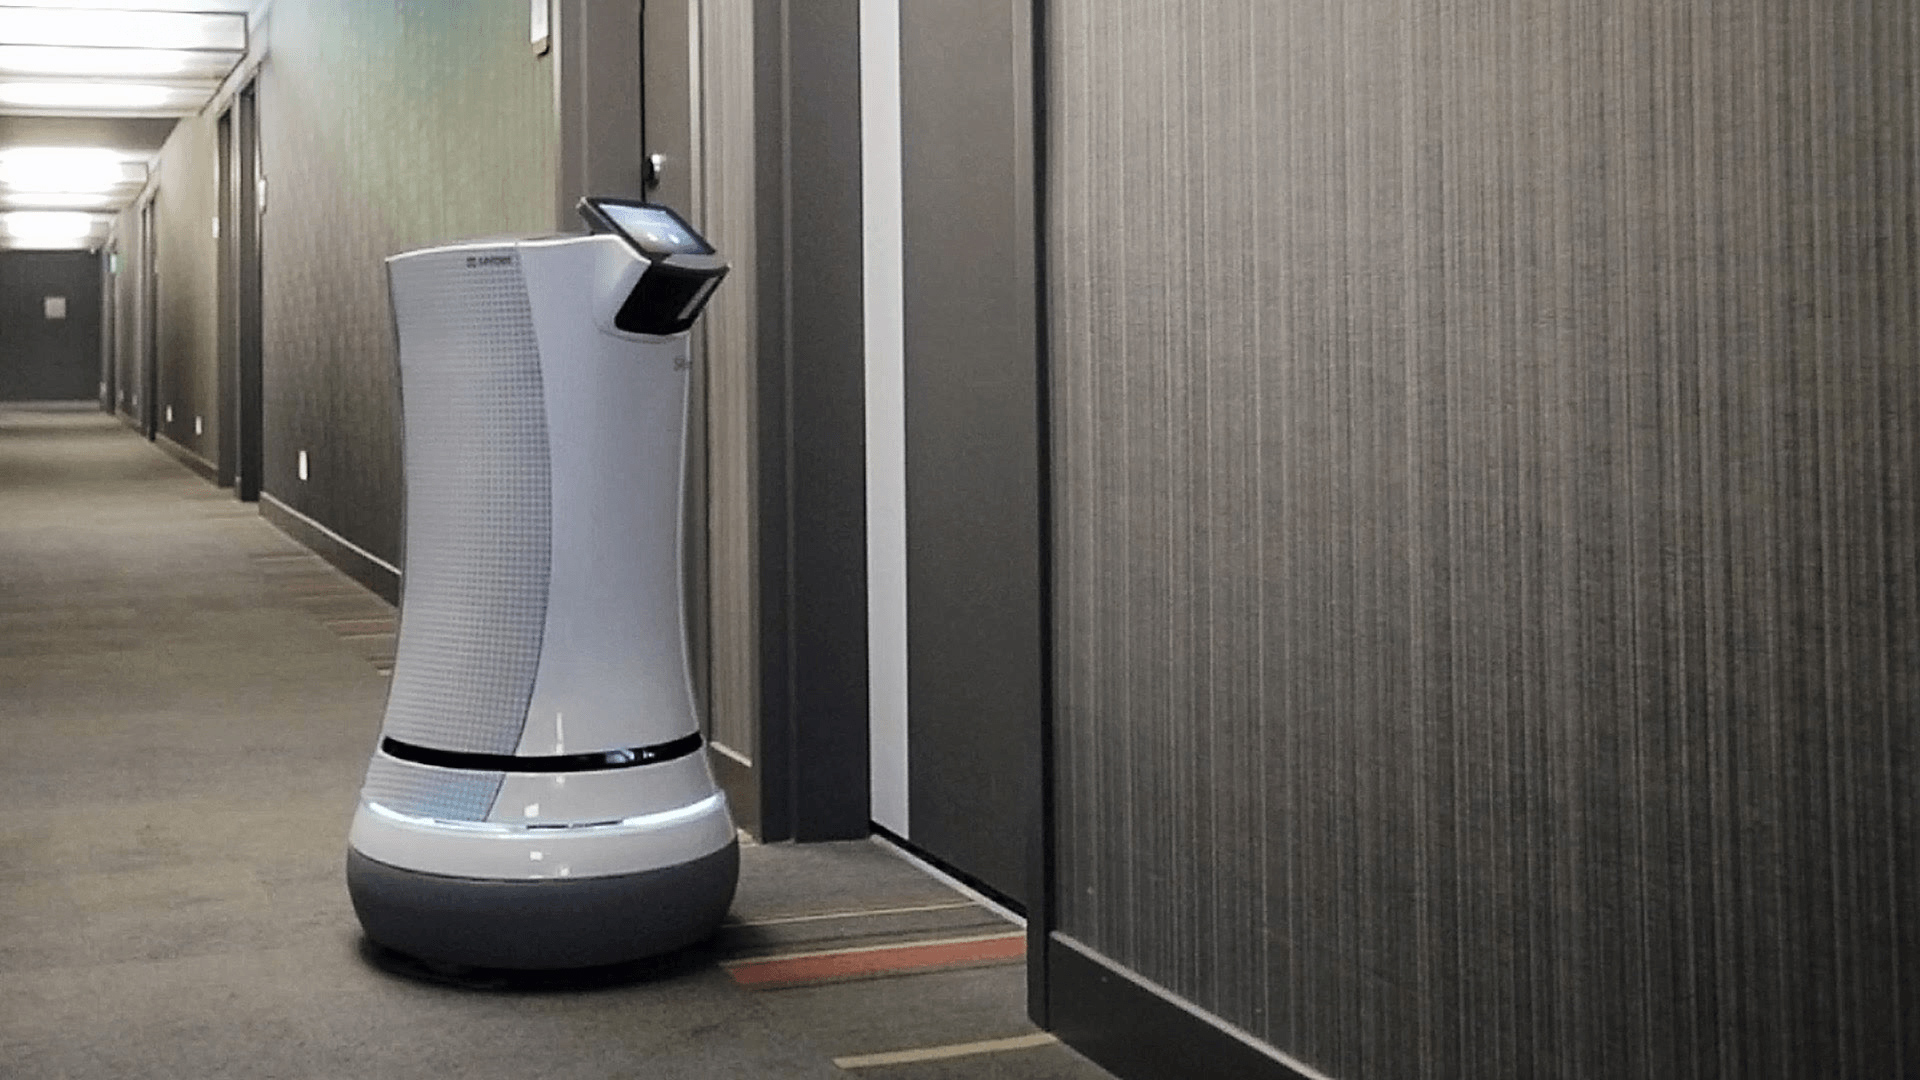 hospitality technology trends- robot 